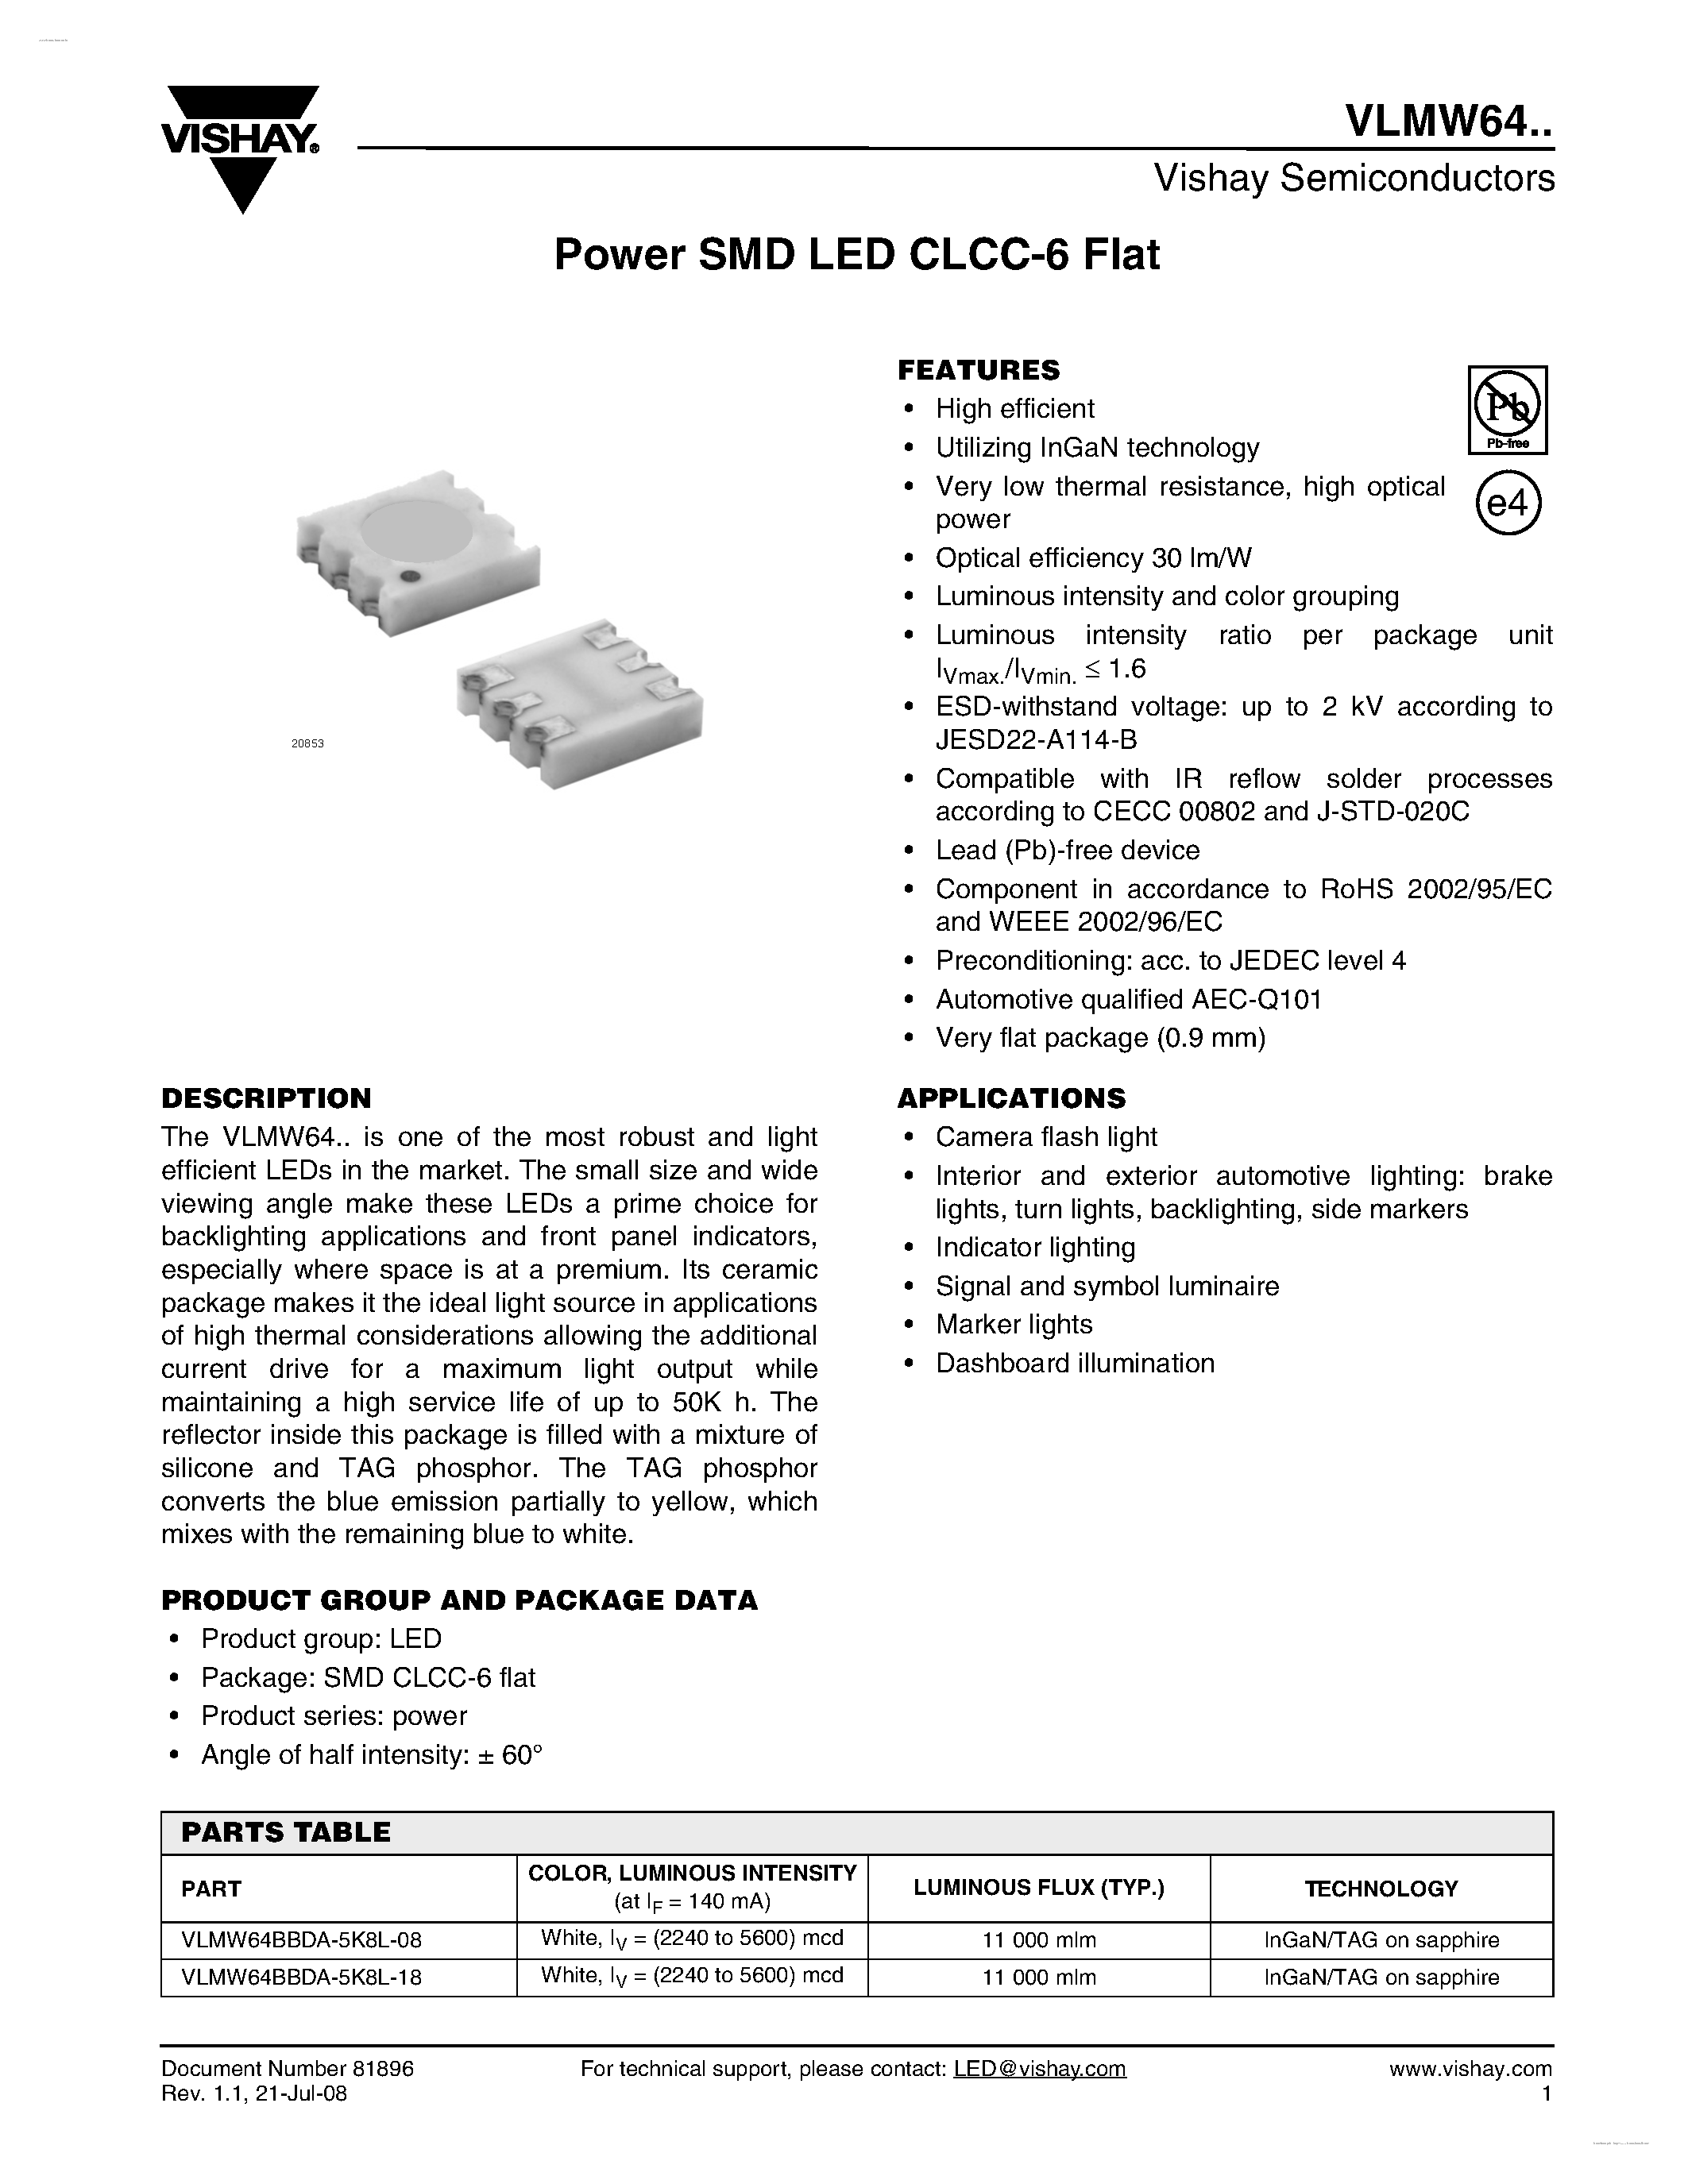 Даташит VLMW64 - Power SMD LED CLCC-6 Flat страница 1